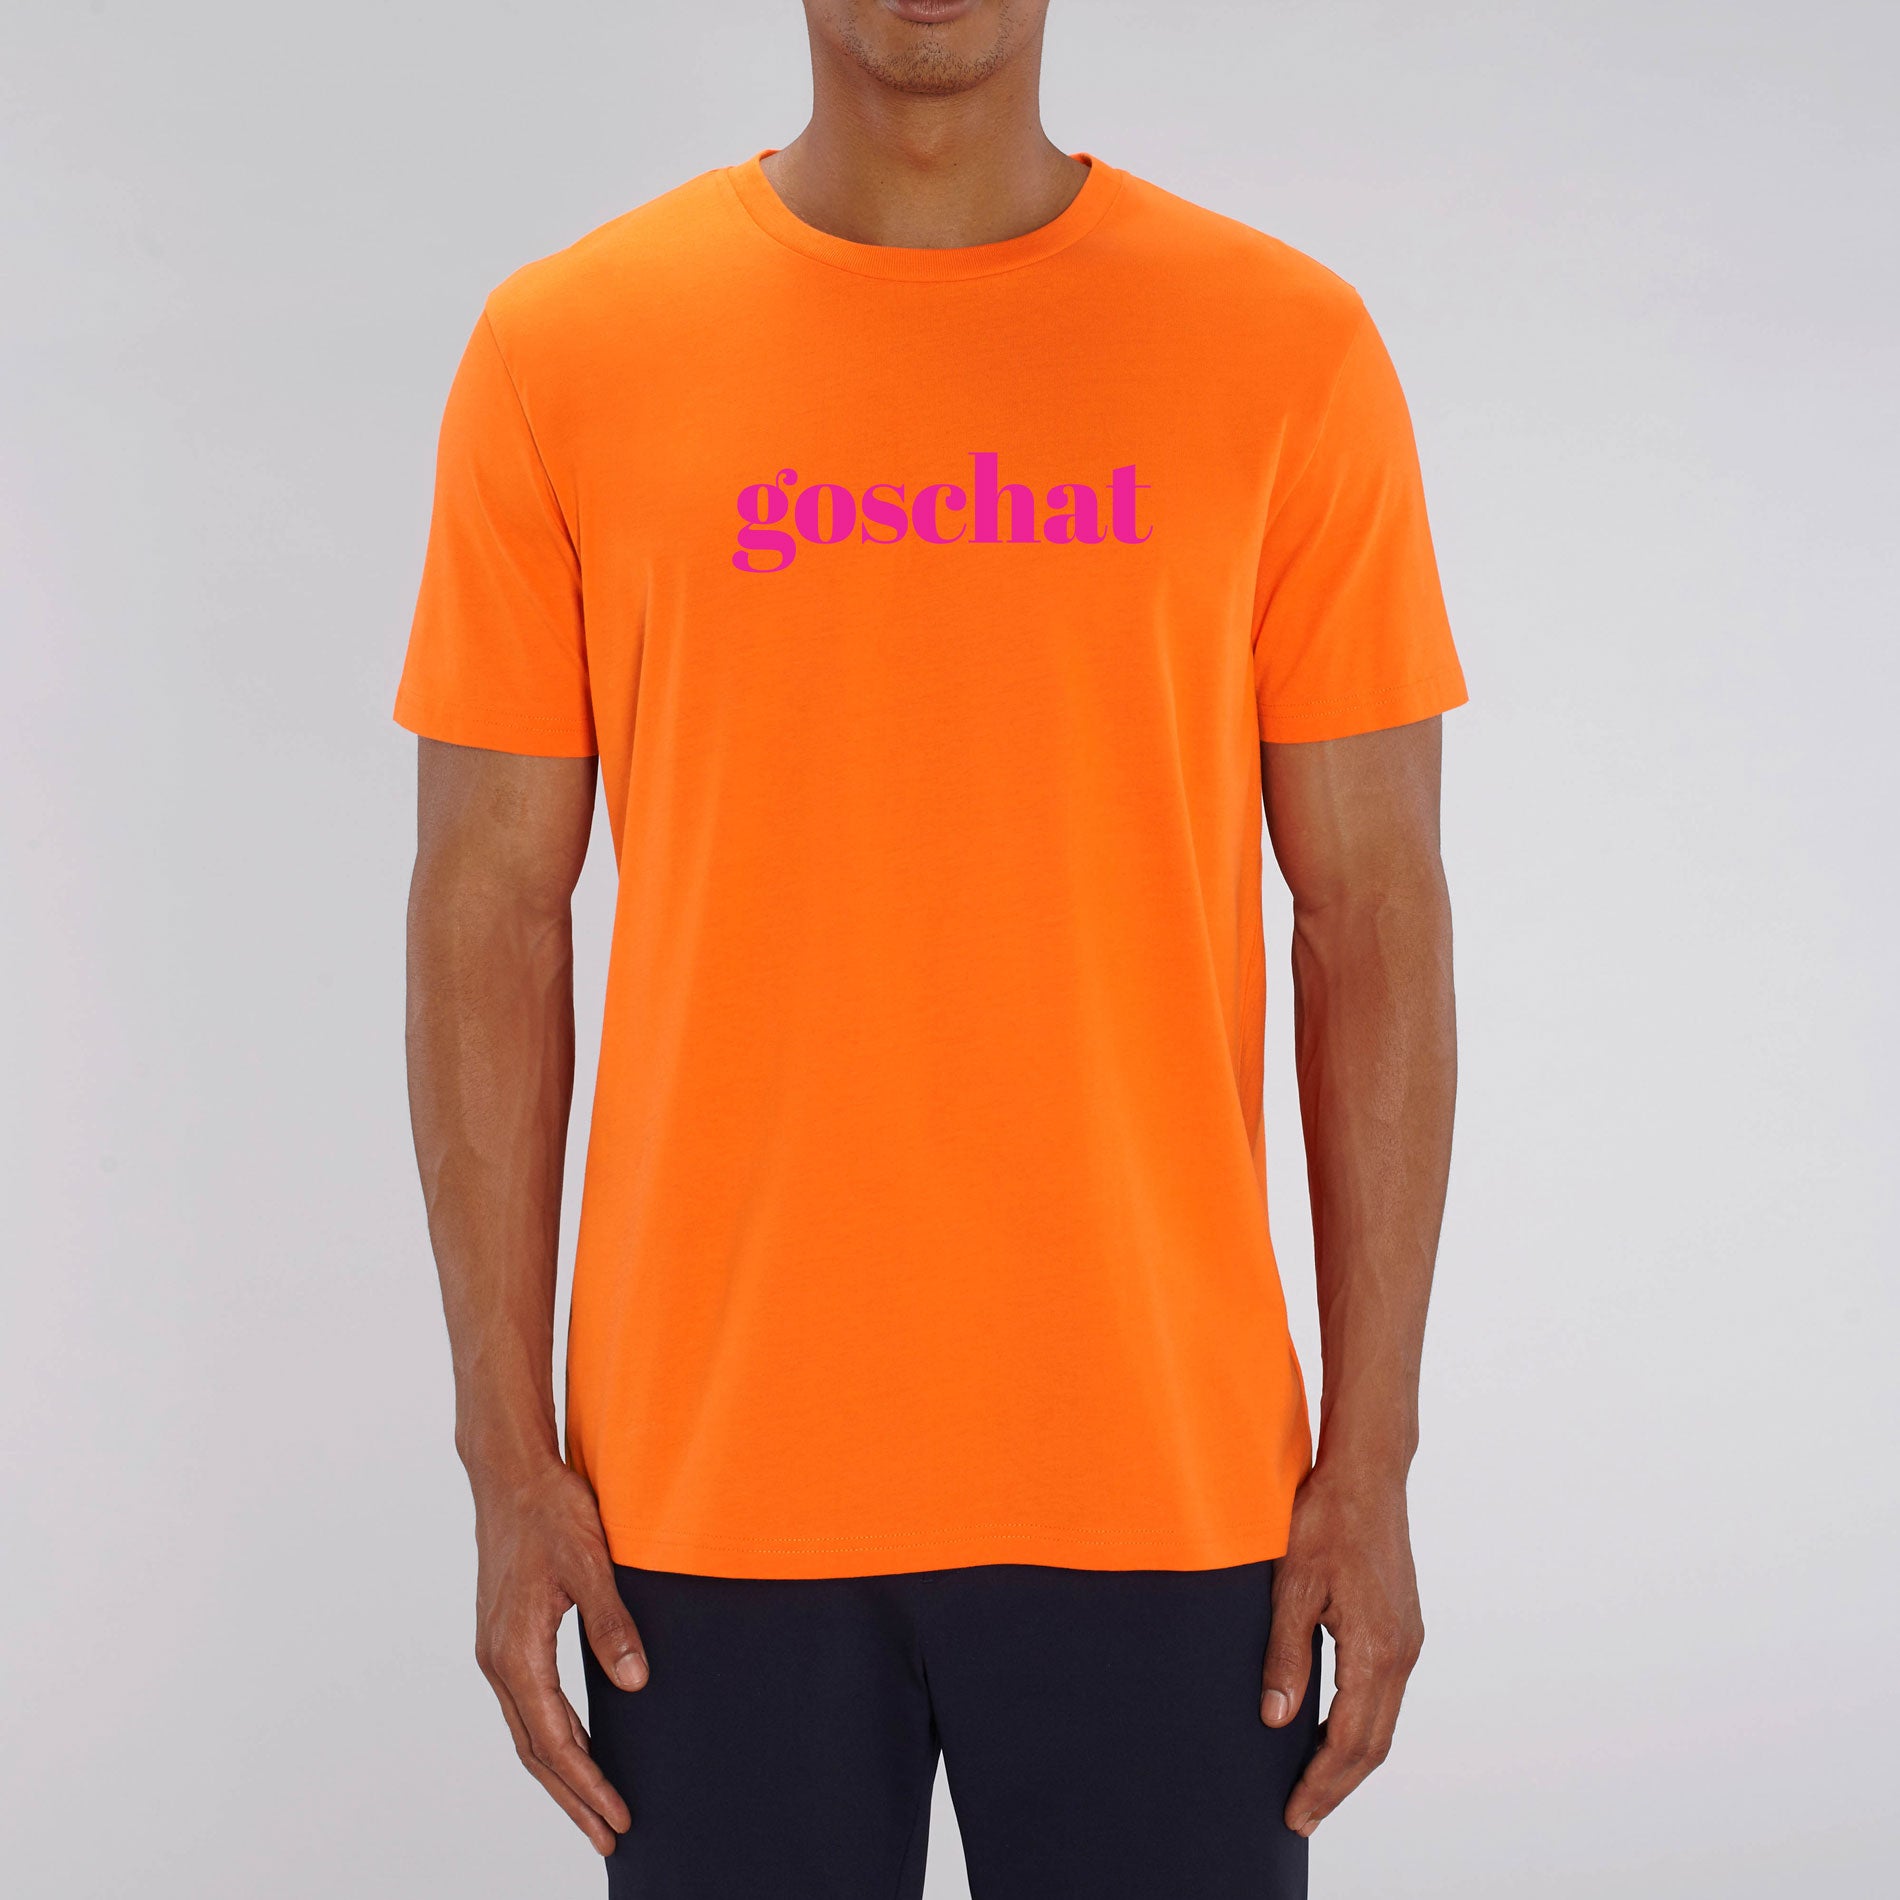 GOSCHAT T-Shirt neonpink knallorange & - BUSSI DELUXE